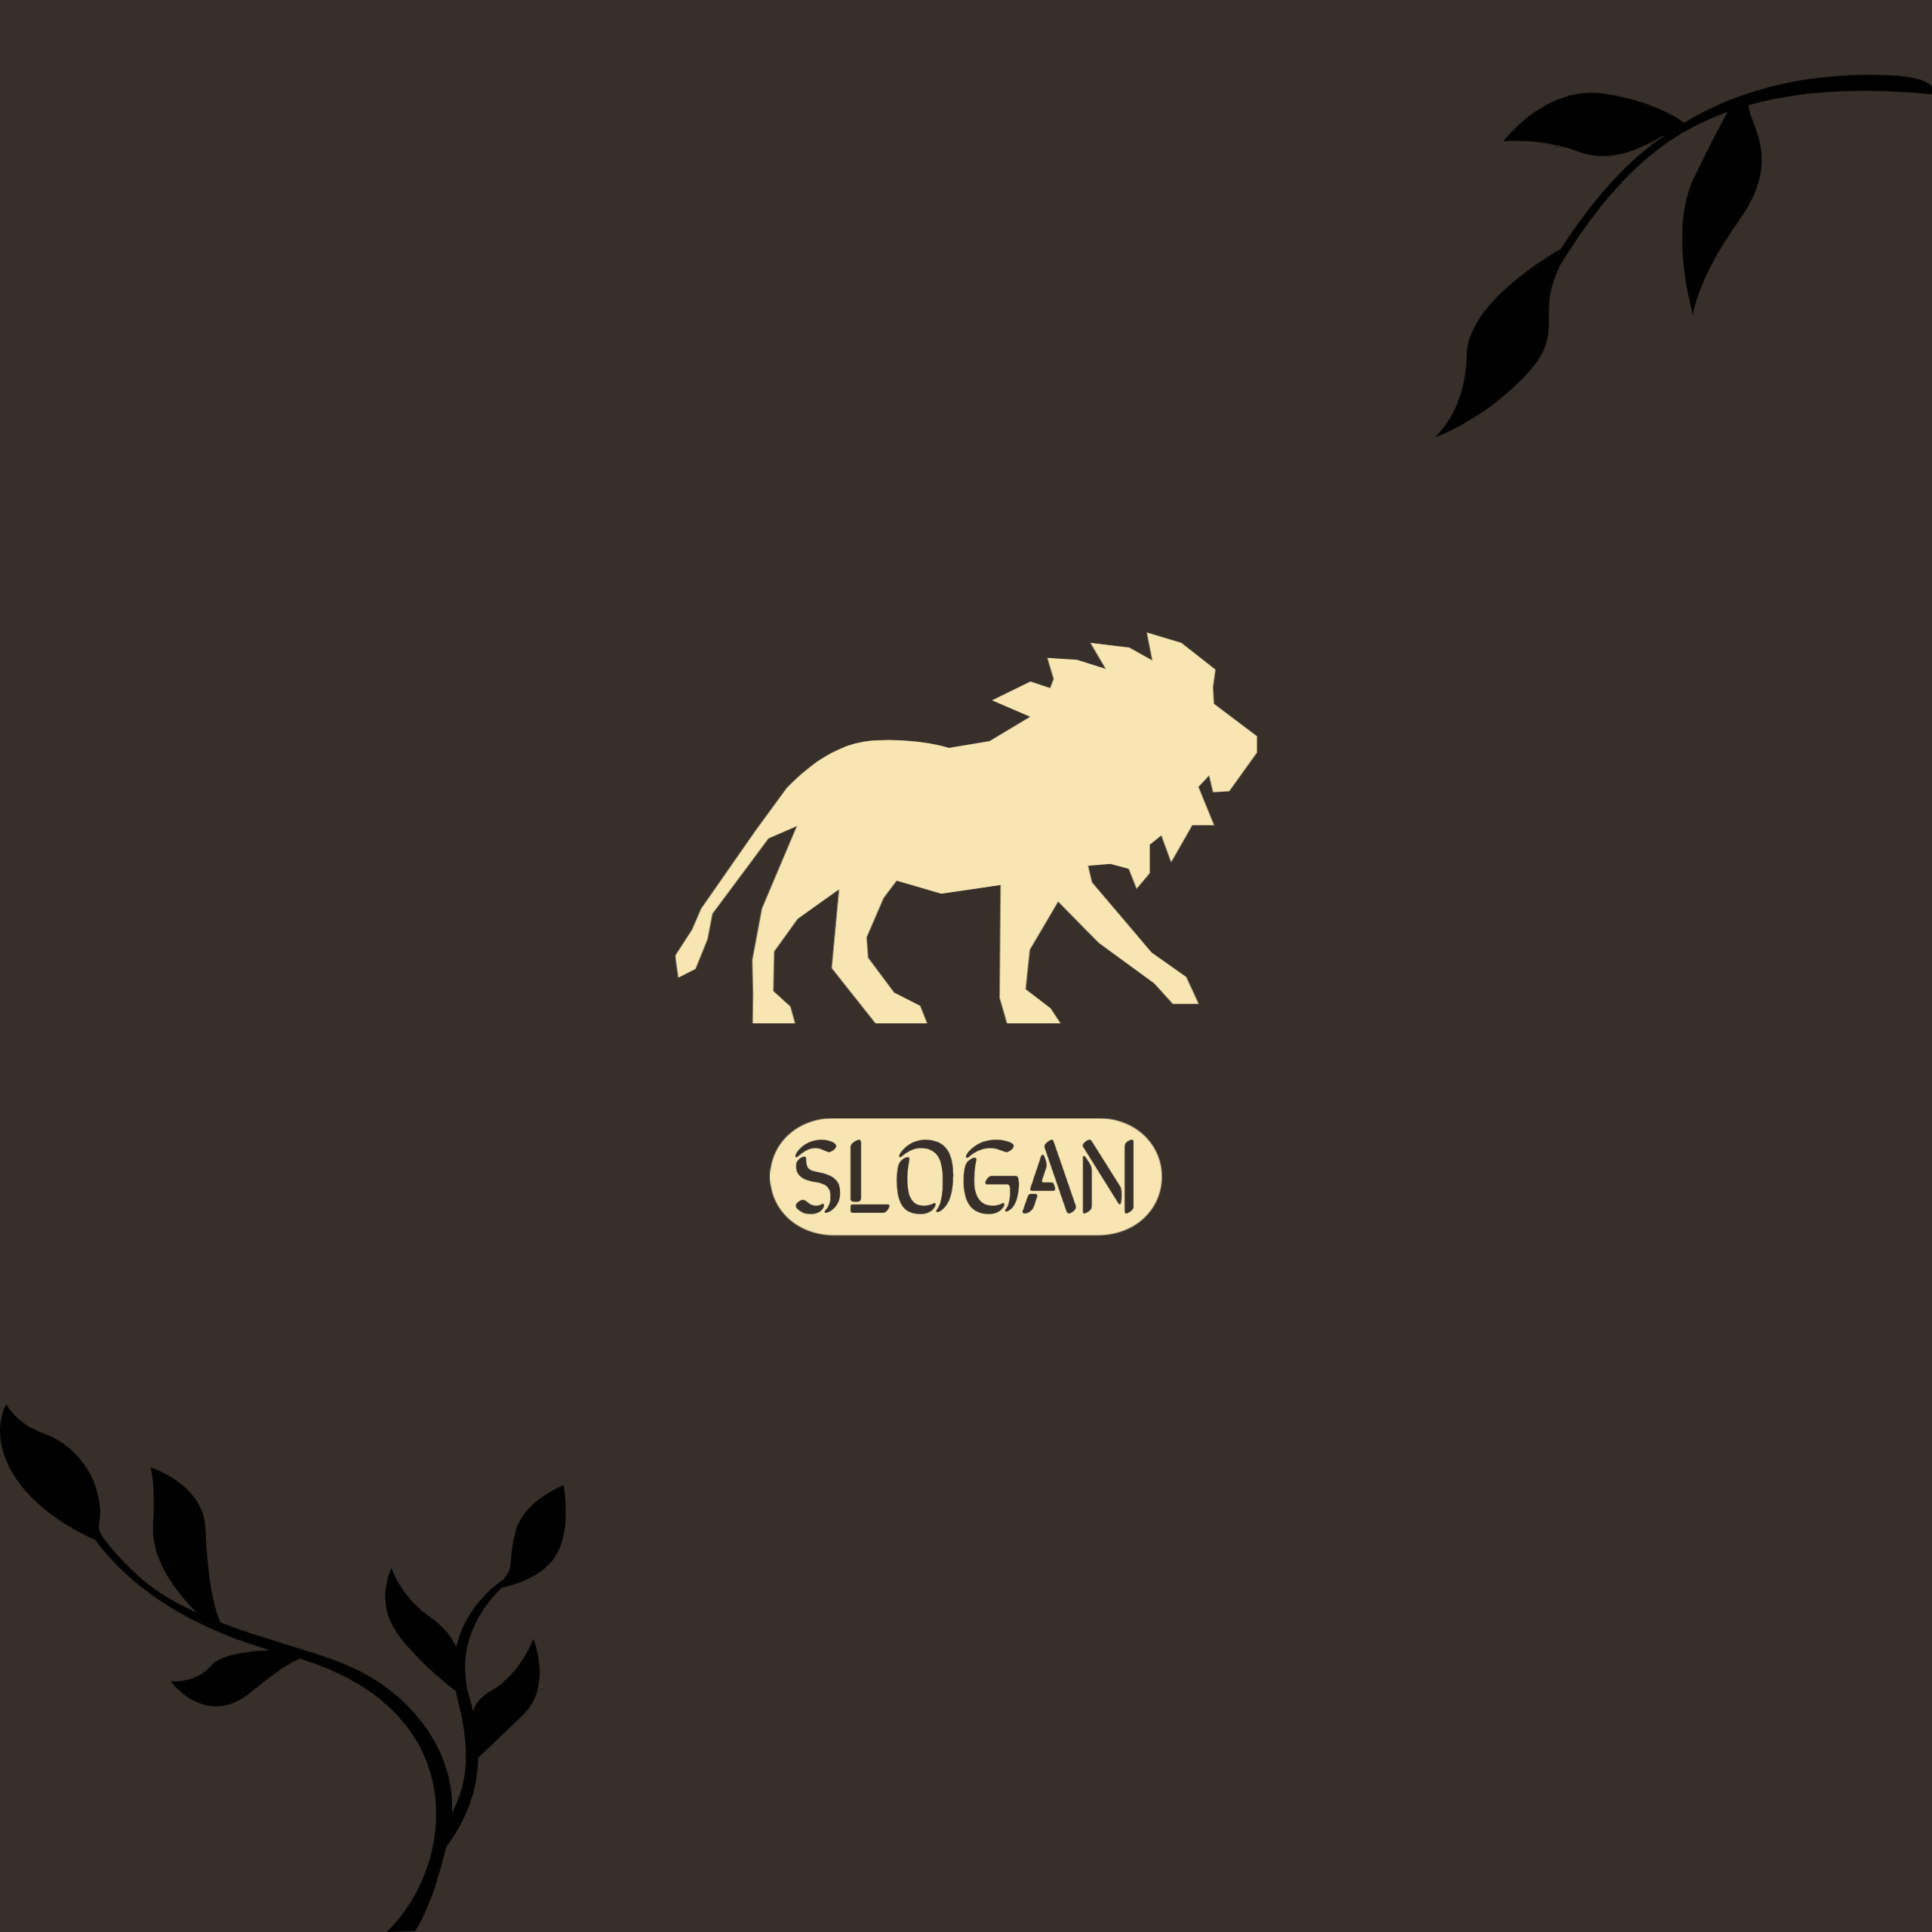 Lion Creative Logos 3 Templates previews.